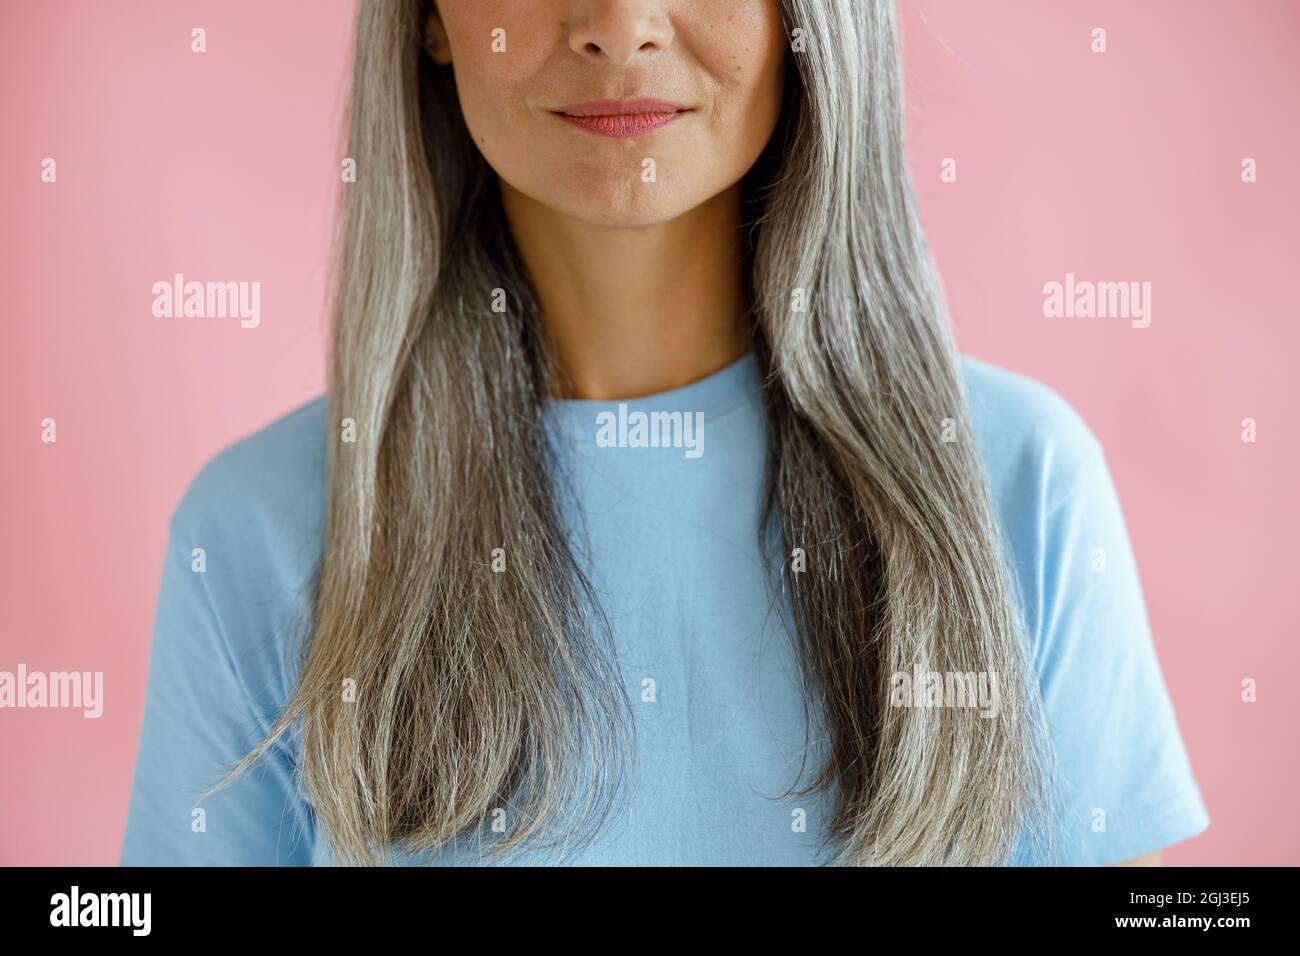 Positive Frau mittleren Alters mit langen, haarigen Haaren auf rosa Hintergrund Stockfoto